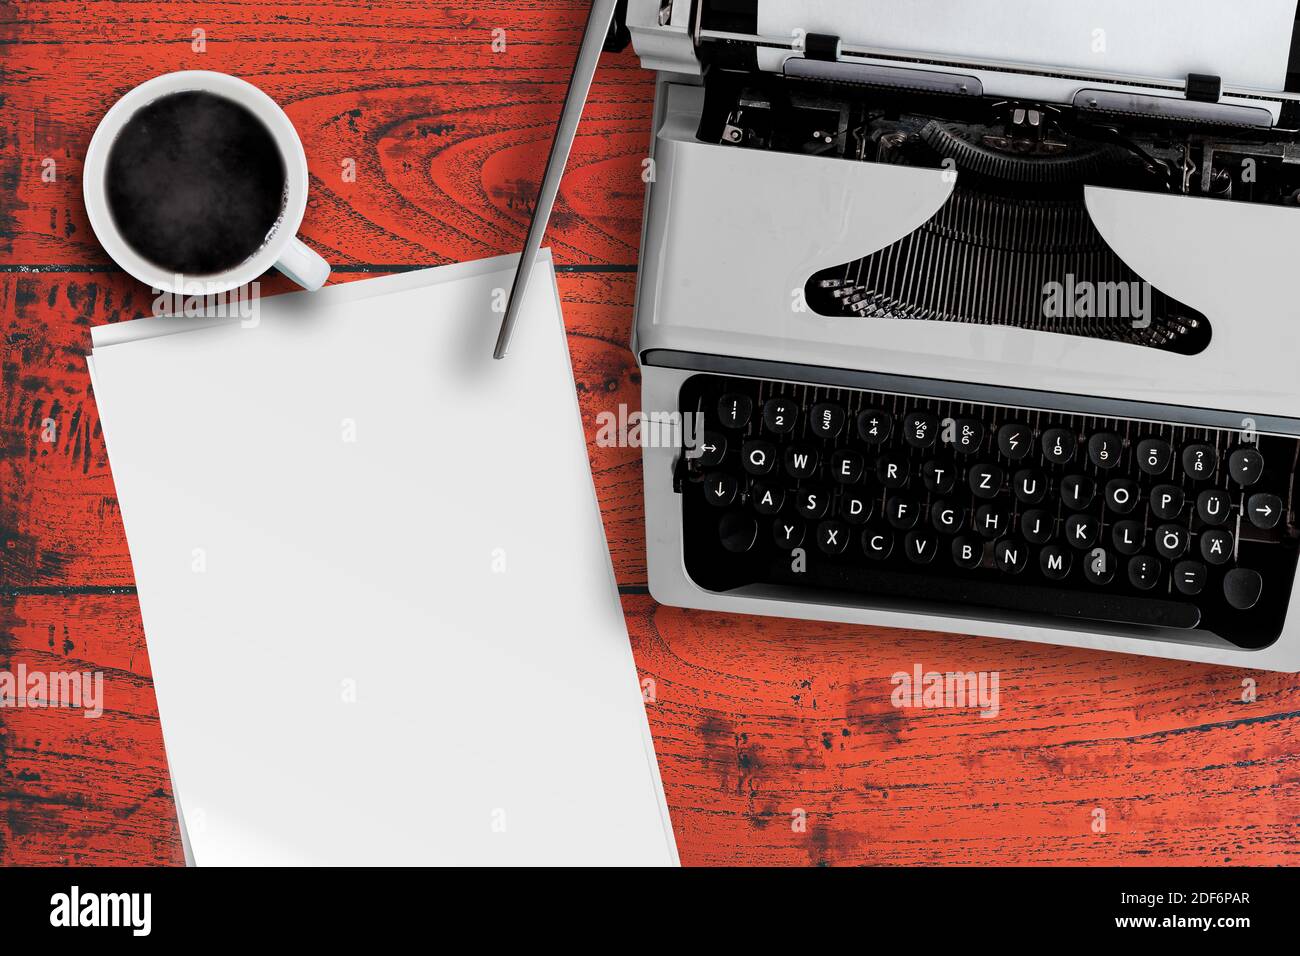 direttamente sopra la vecchia macchina da scrivere, una tazza di caffè caldo e una pila di carta da scrittura bianca sulla scrivania in legno rosso Foto Stock